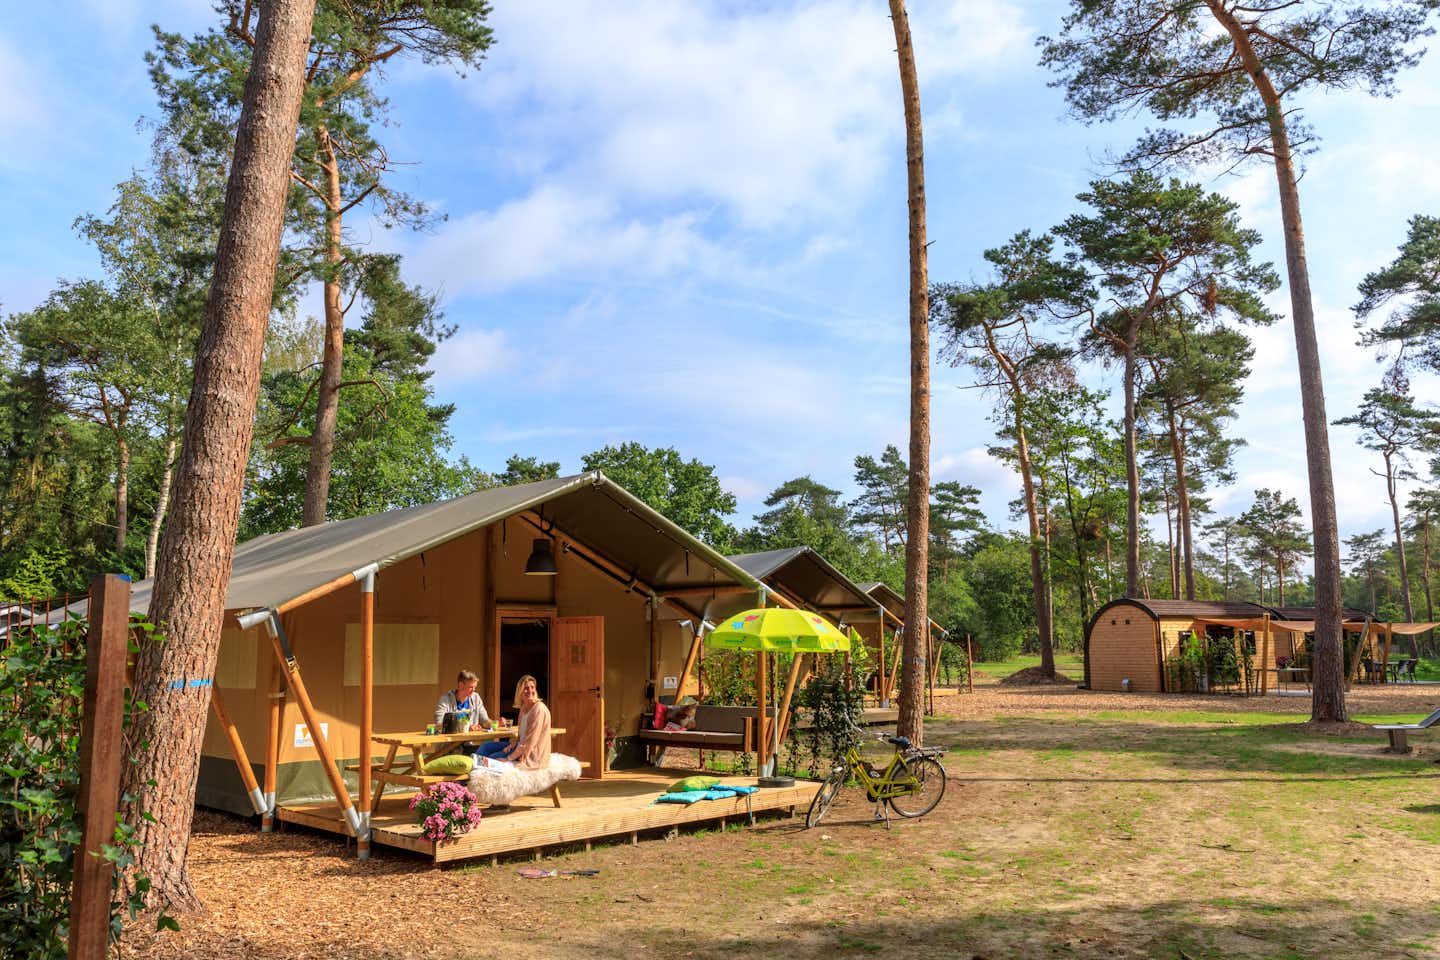 Camping de Haeghehorst - Glamping und Mobilheimen  im Schatten der Bäume auf dem Campingplatz